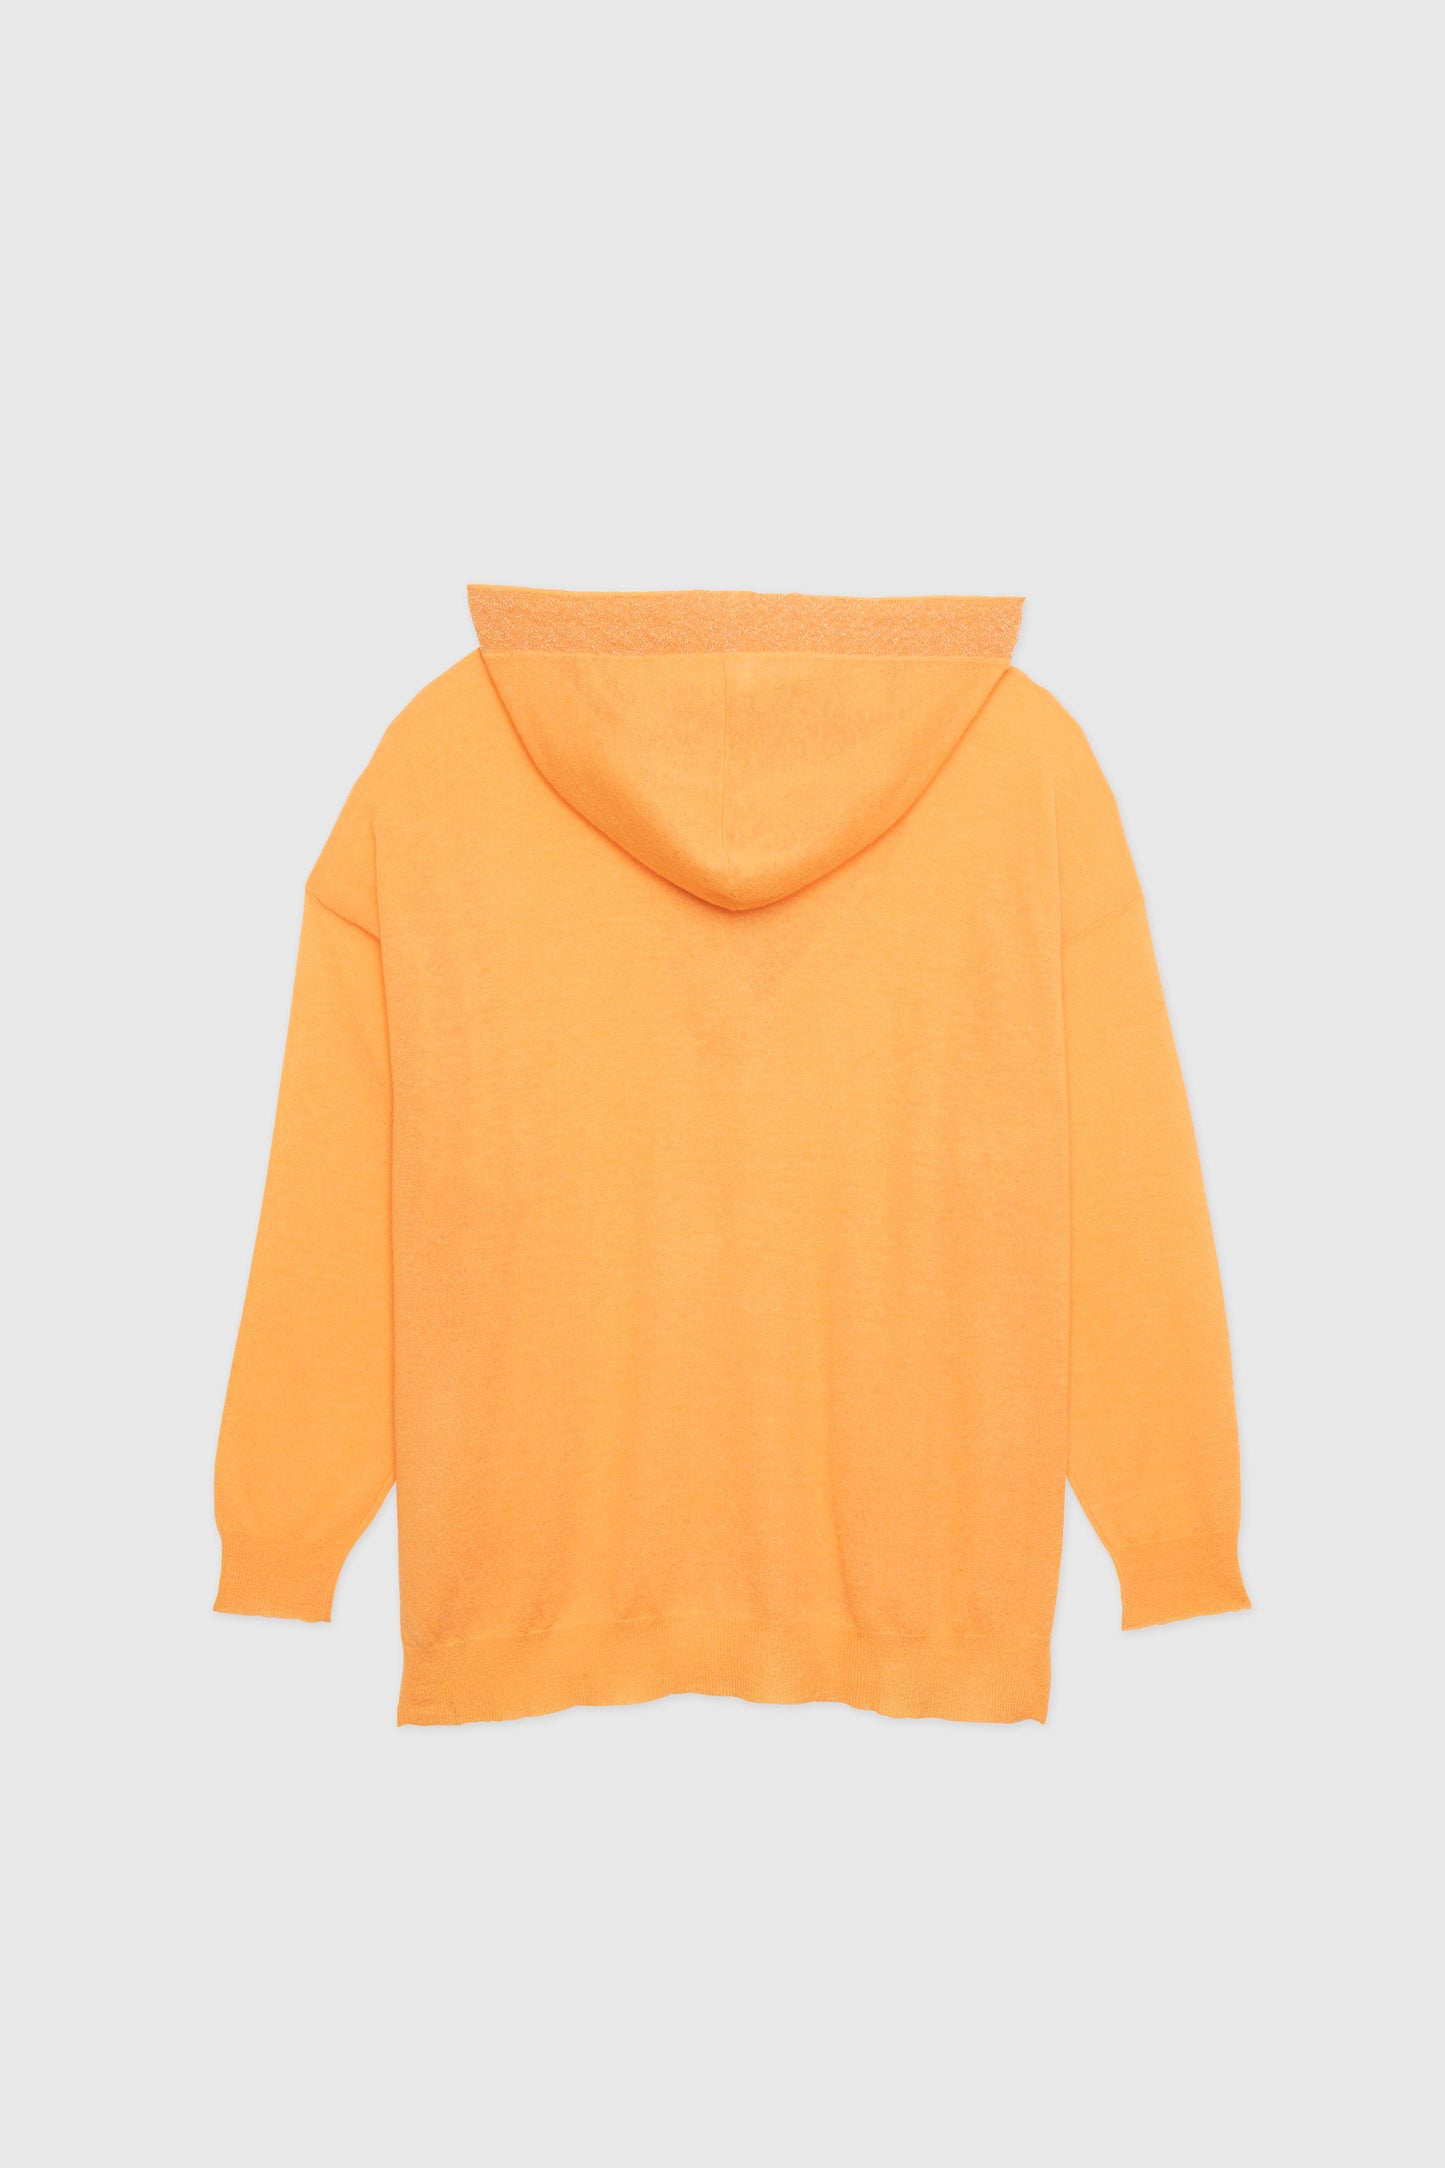 DARWIN Orange Sweater